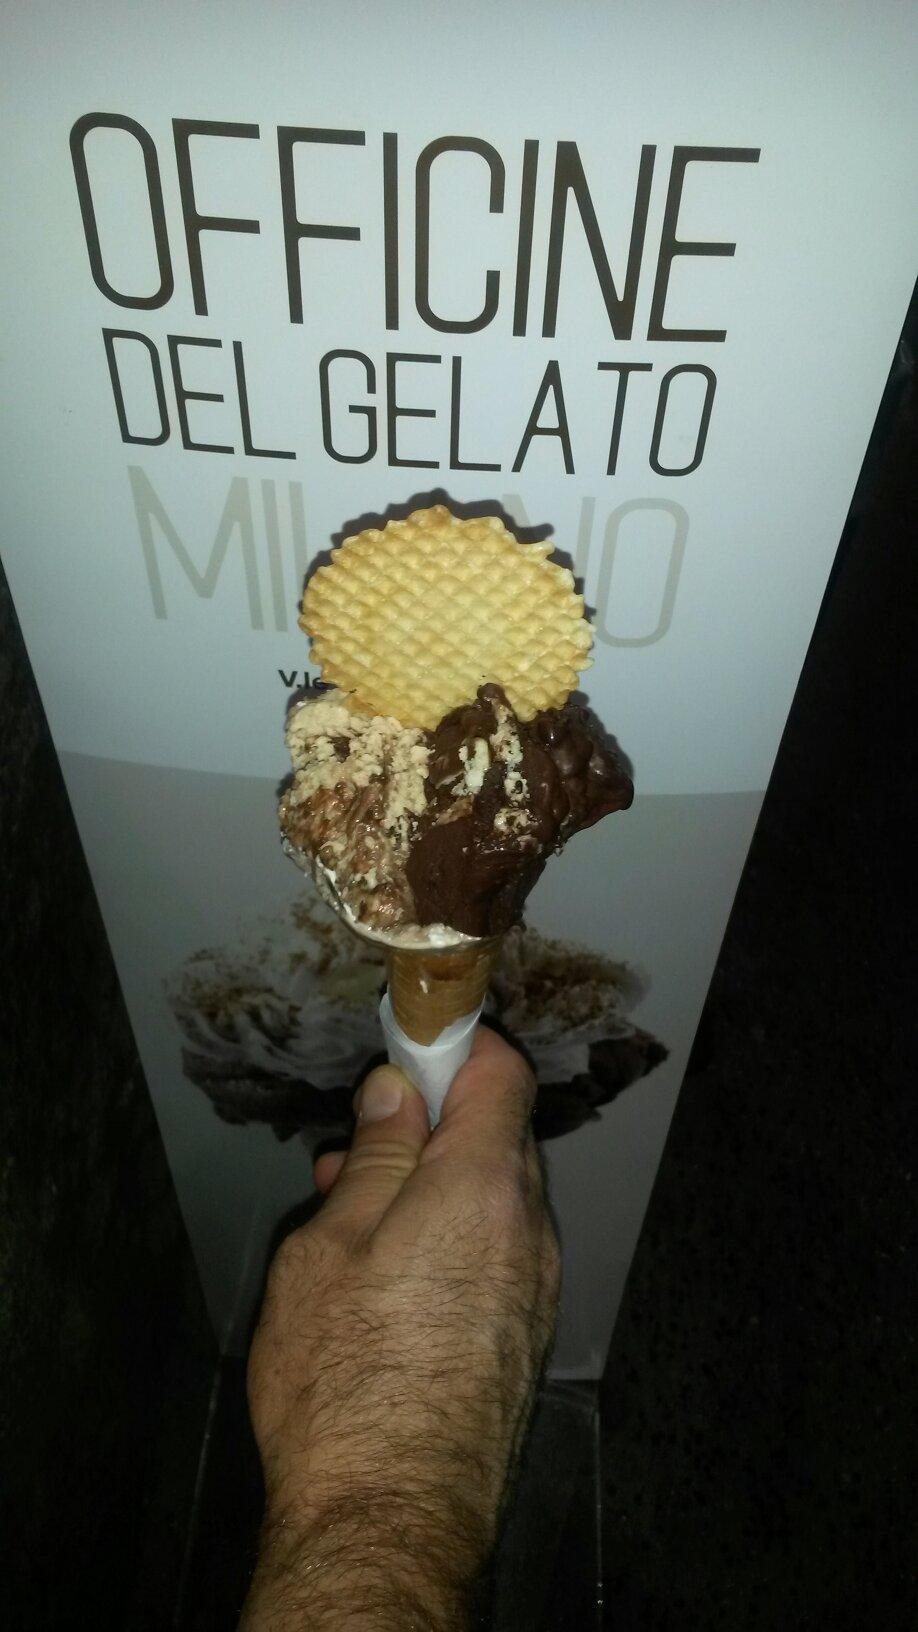 Officine del gelato Milano